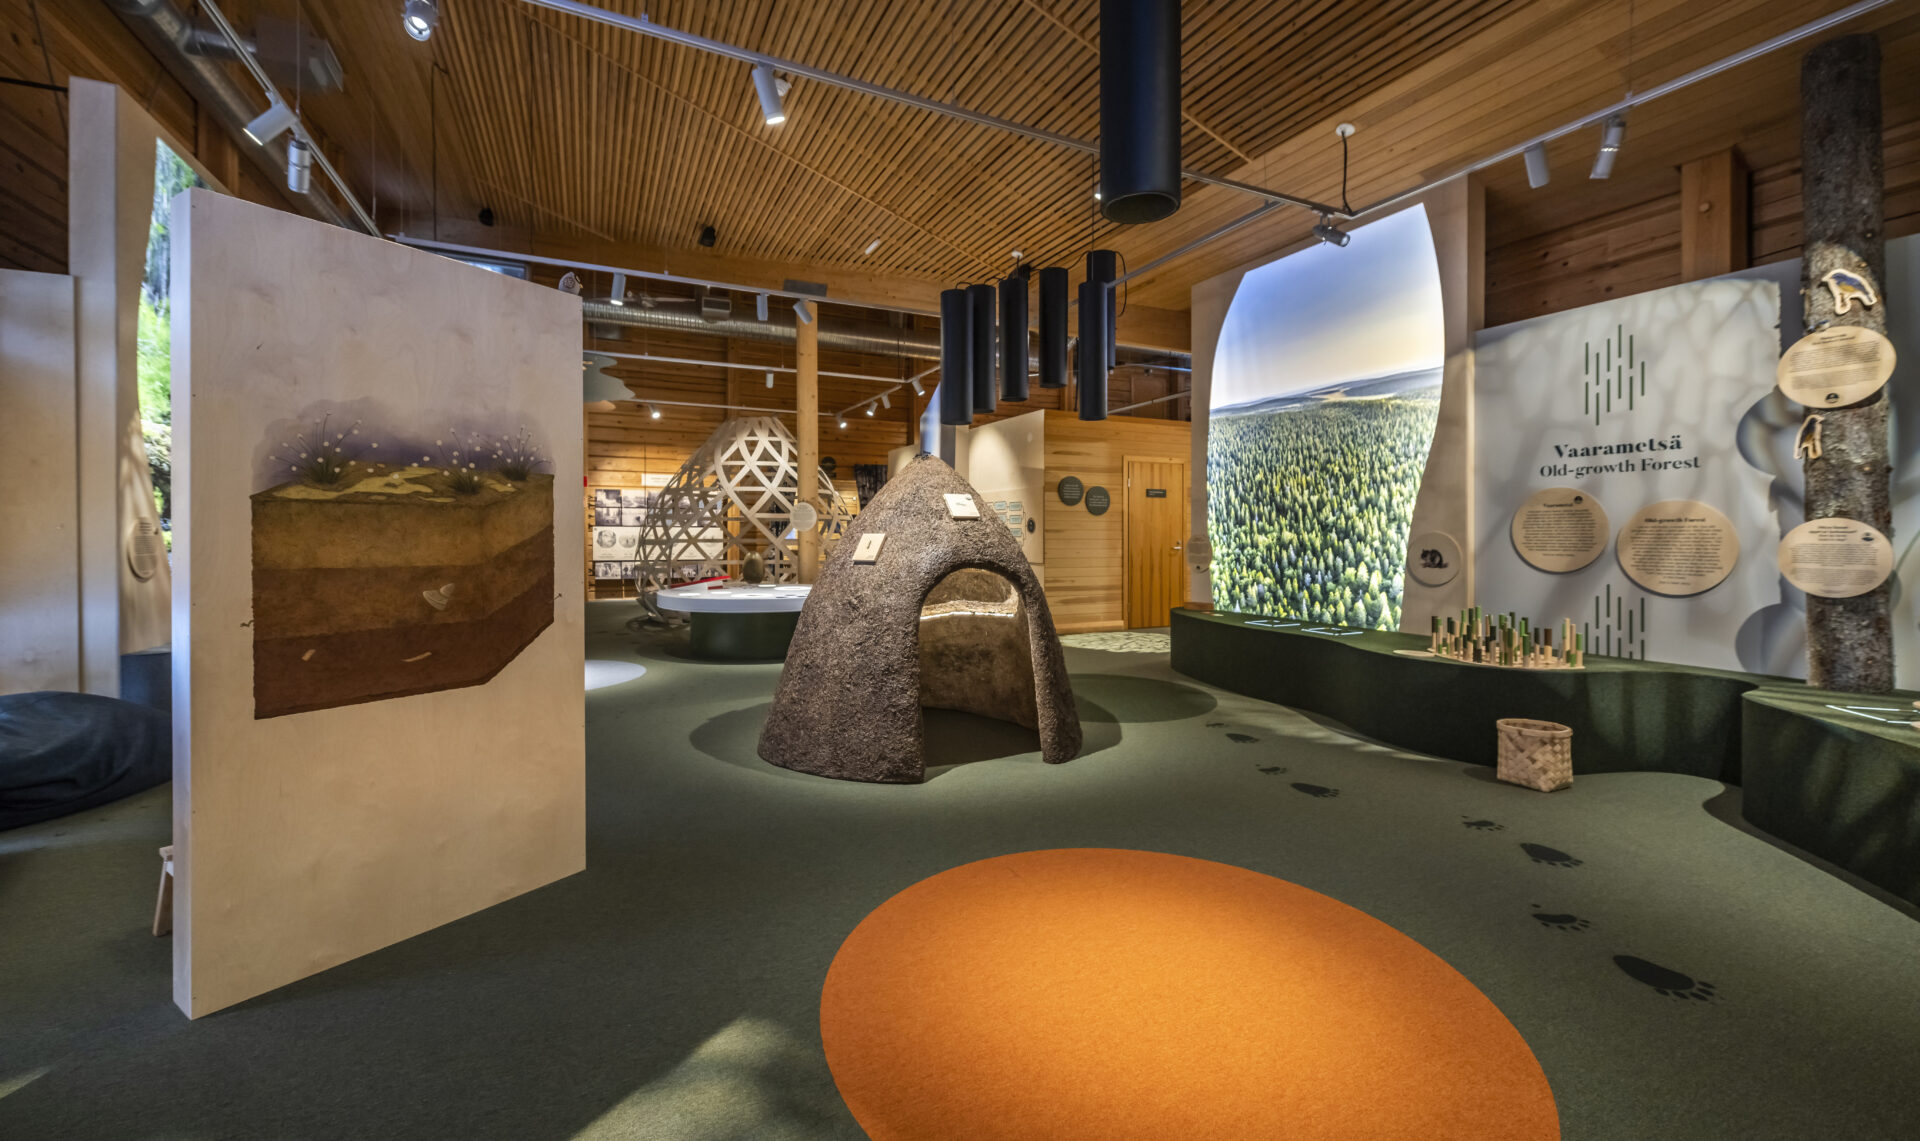 Syöte külastuskeskuse näitus “Your Nature with Love”, Soome